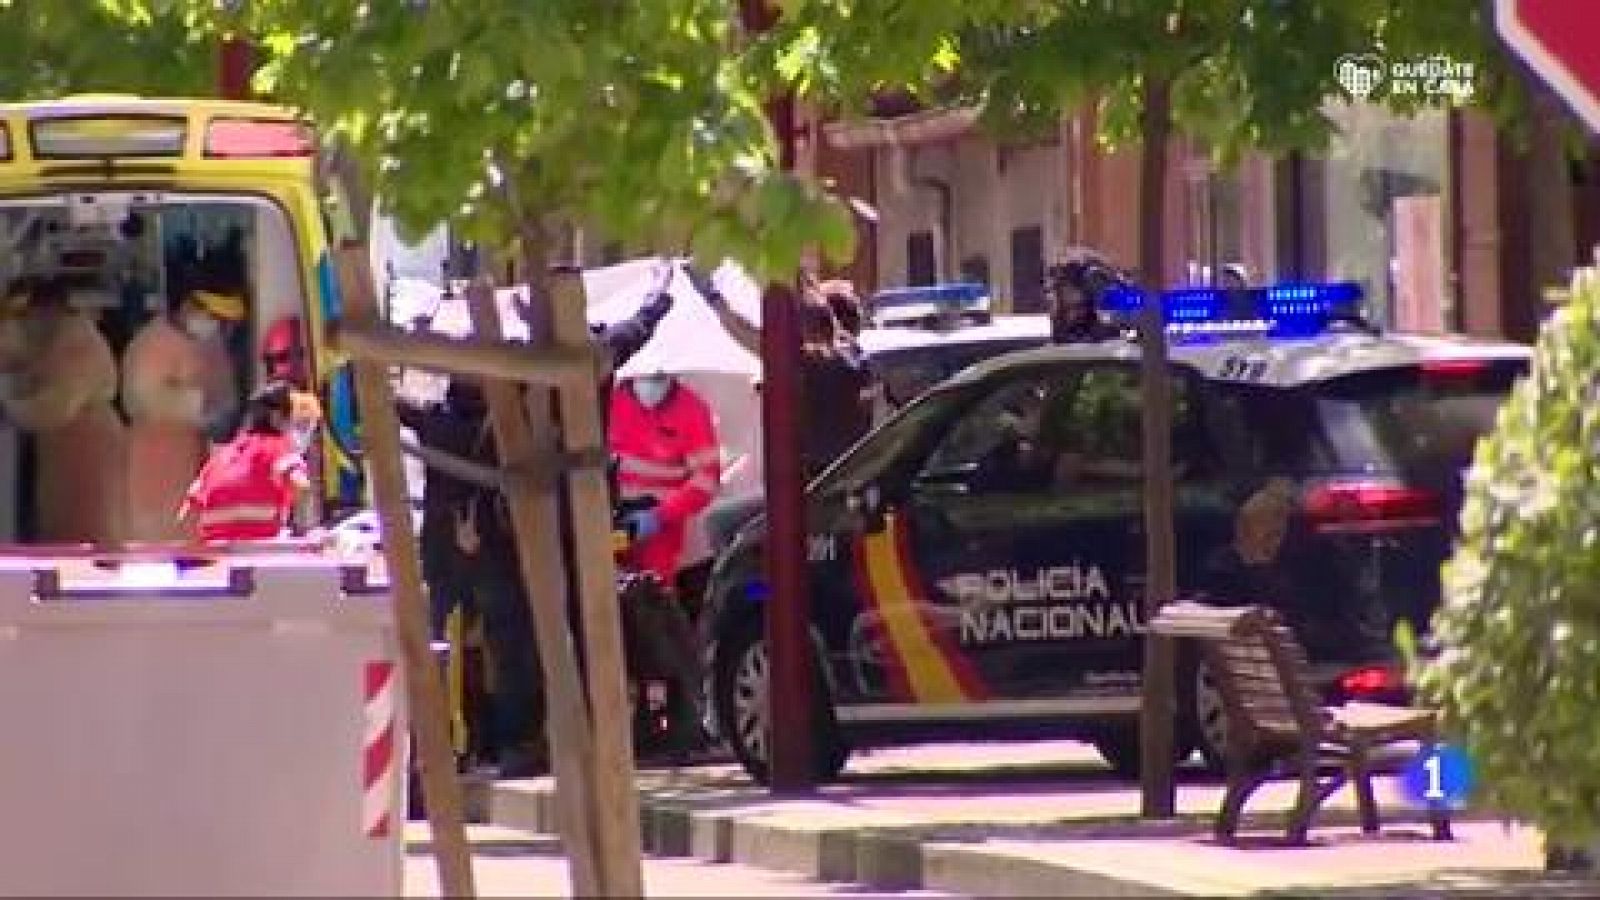 Vídeo: Detienen, herido, al octogenario atrincherado en Valladolid tras un tiroteo - RTVE.es